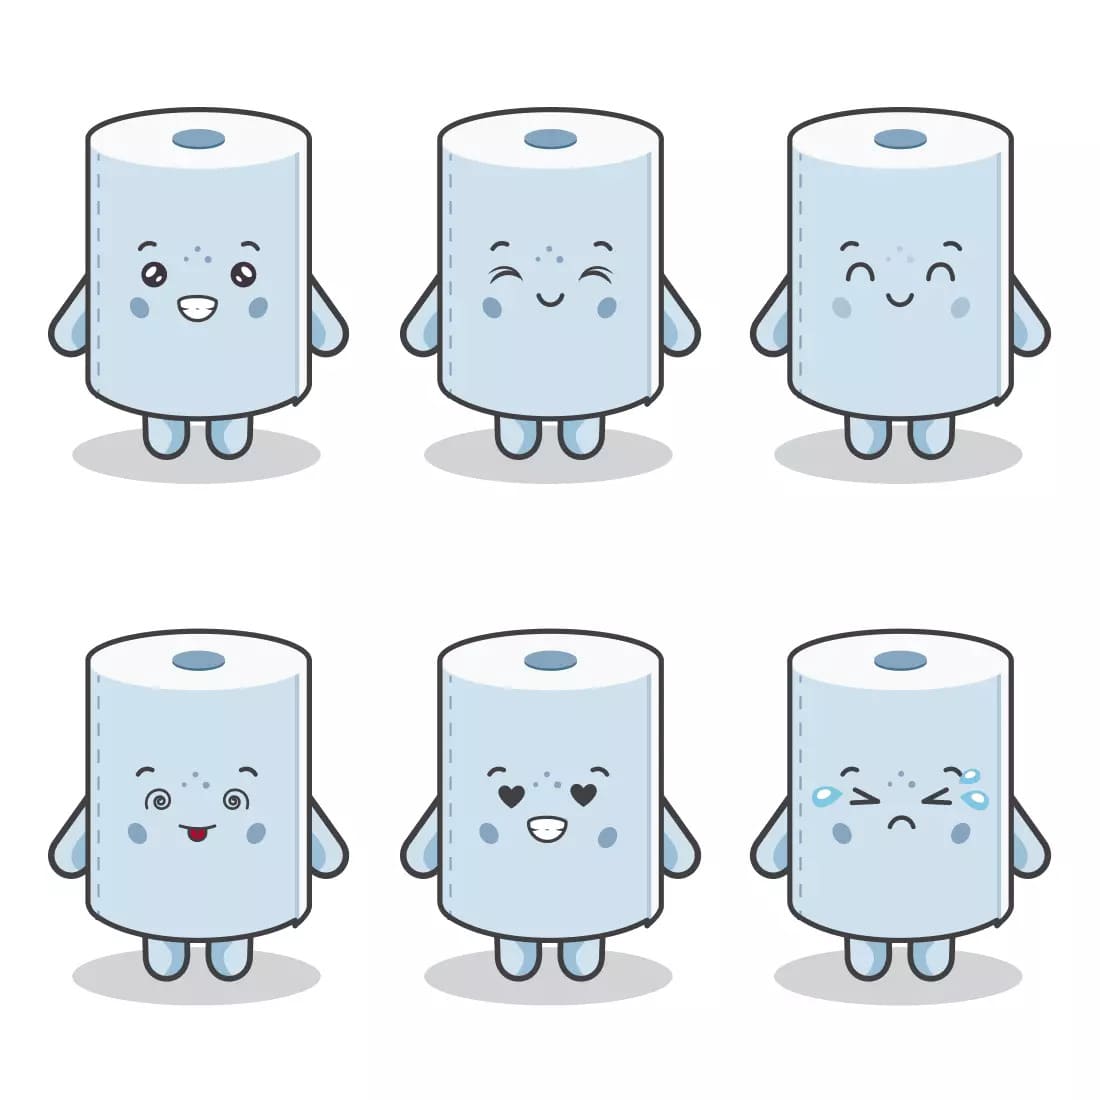 Toilet Paper SVG Bundle Preview 1.